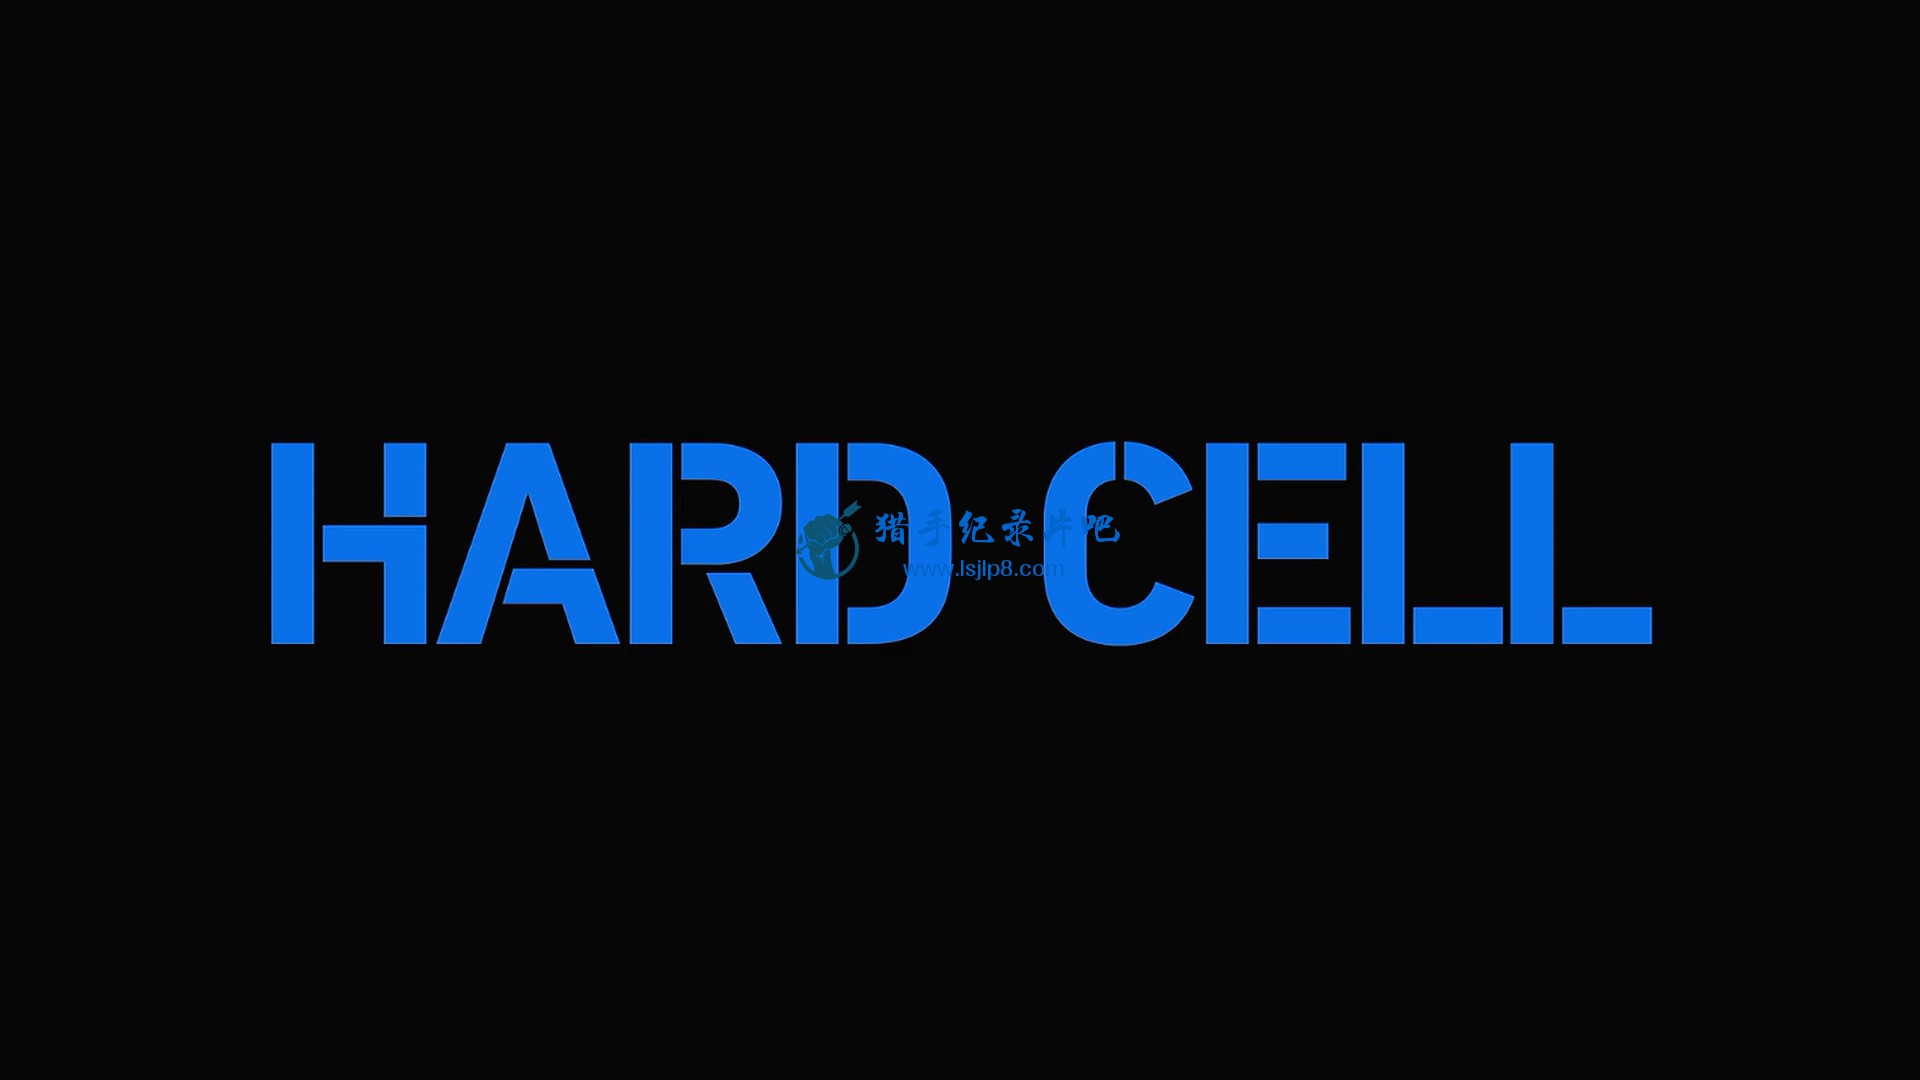 Hard.Cell.S01E01.Episode.1.1080p.NF.WEB-DL.DDP5.1.x264-TEPES.mkv_20220414_094822.928.jpg